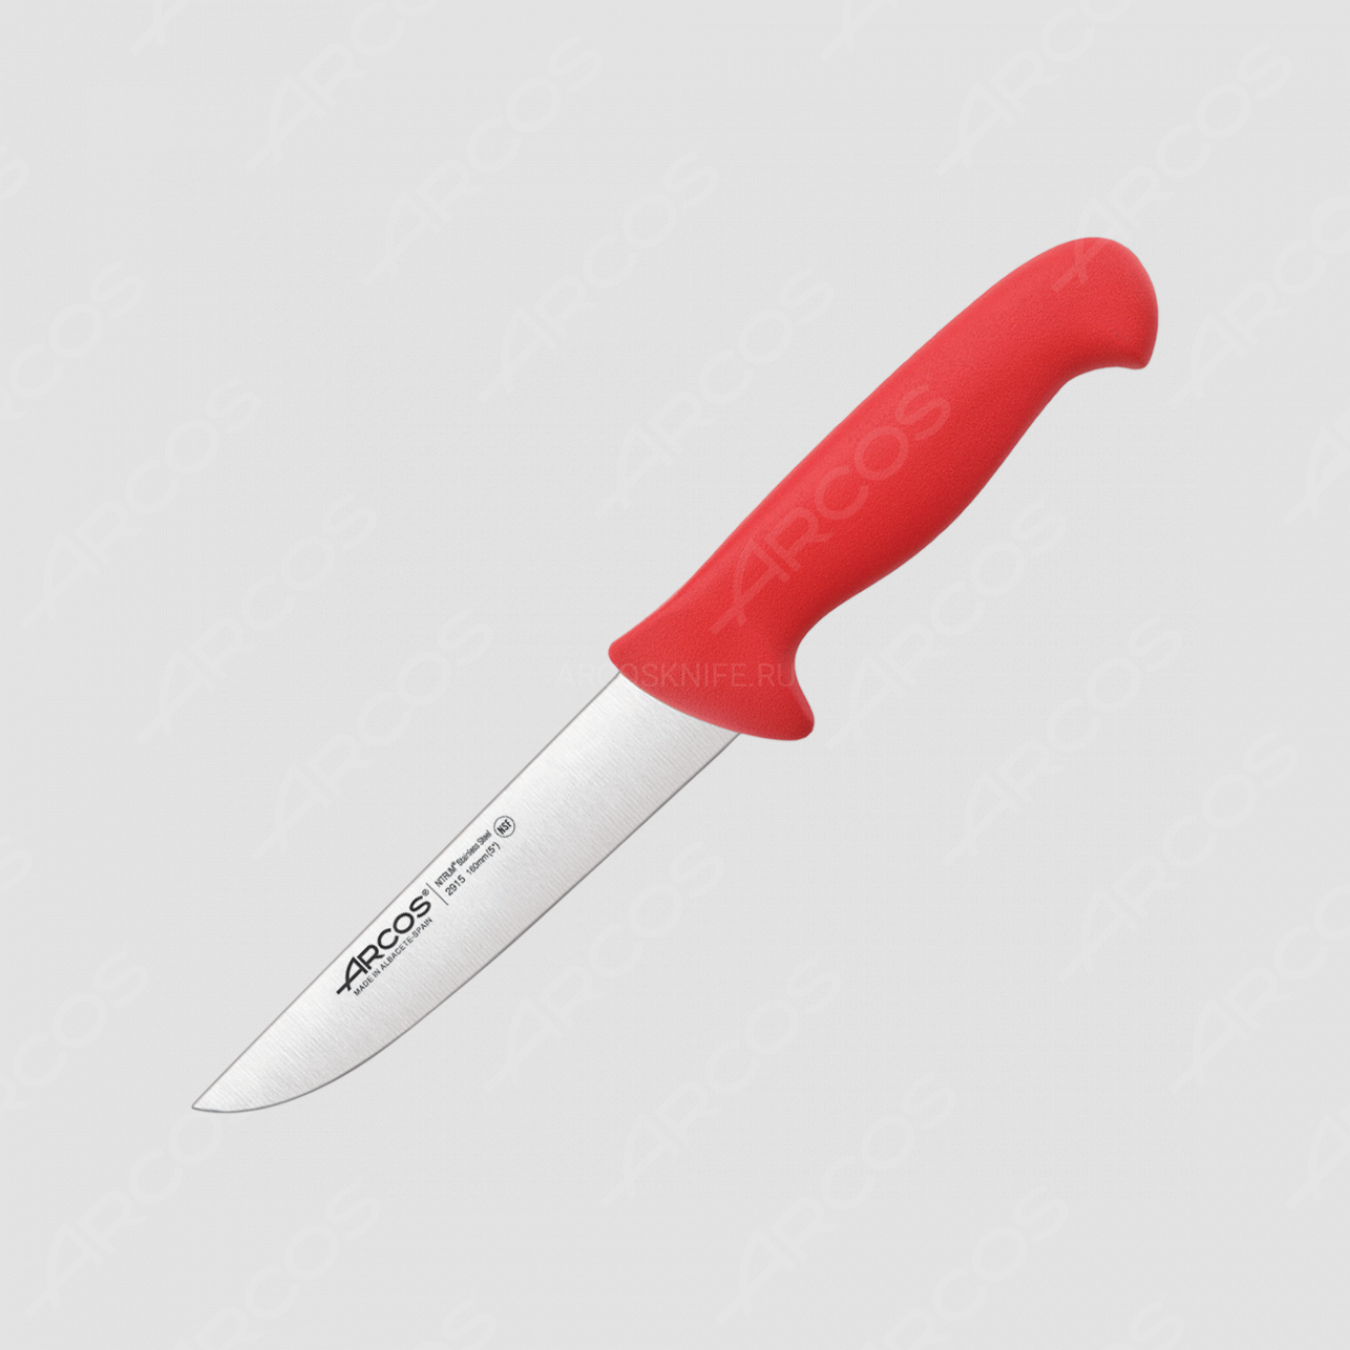 Нож кухонный для разделки 16 см, рукоять - красная, серия 2900, ARCOS, Испания